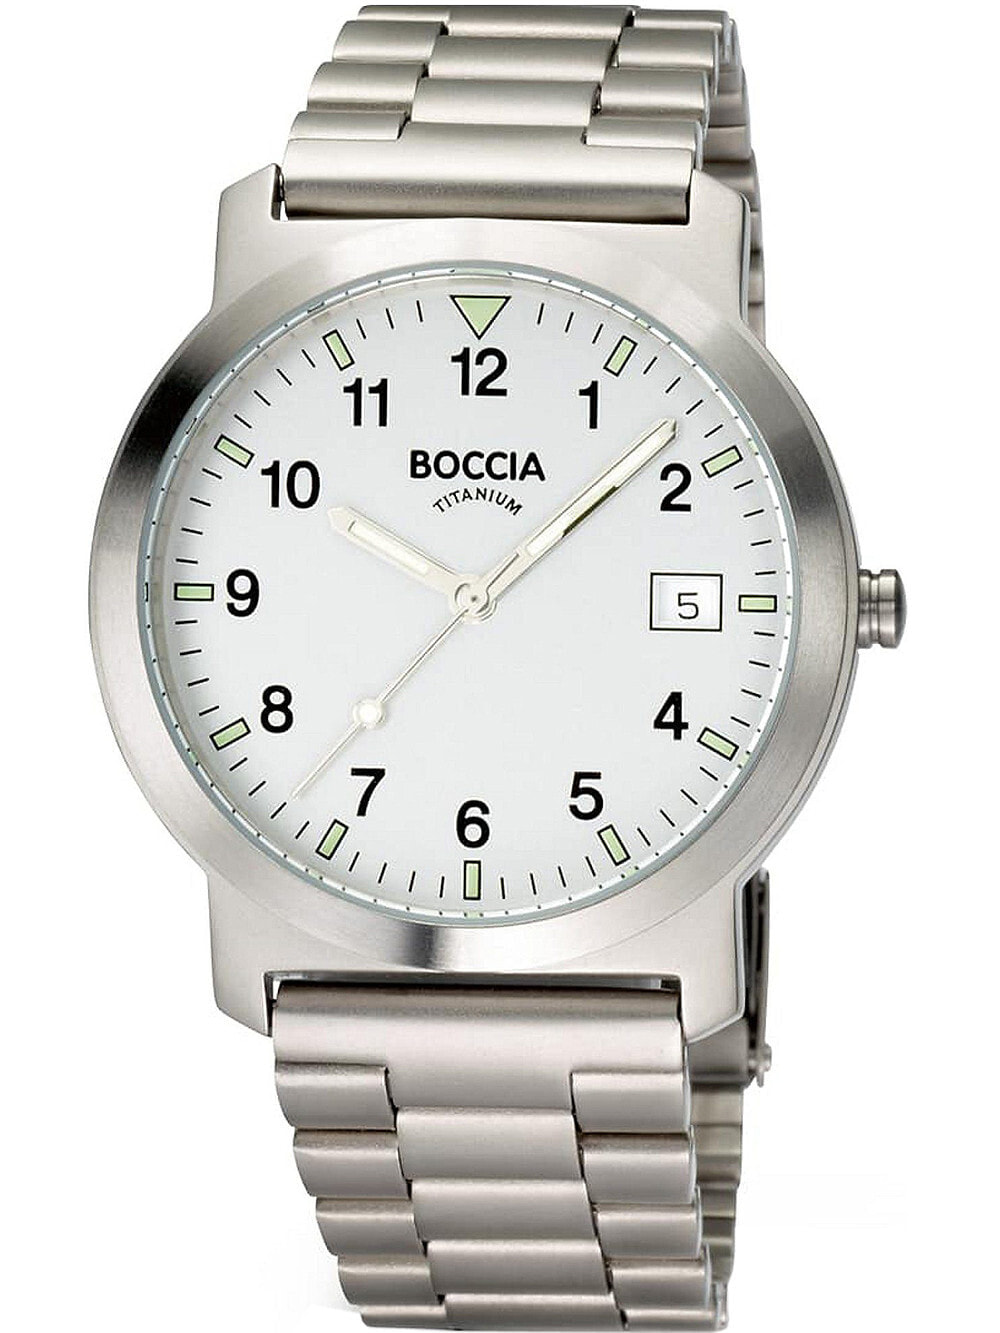 Мужские наручные часы с серебряным браслетом Boccia 3630-01 mens watch titanium 37mm 5ATM